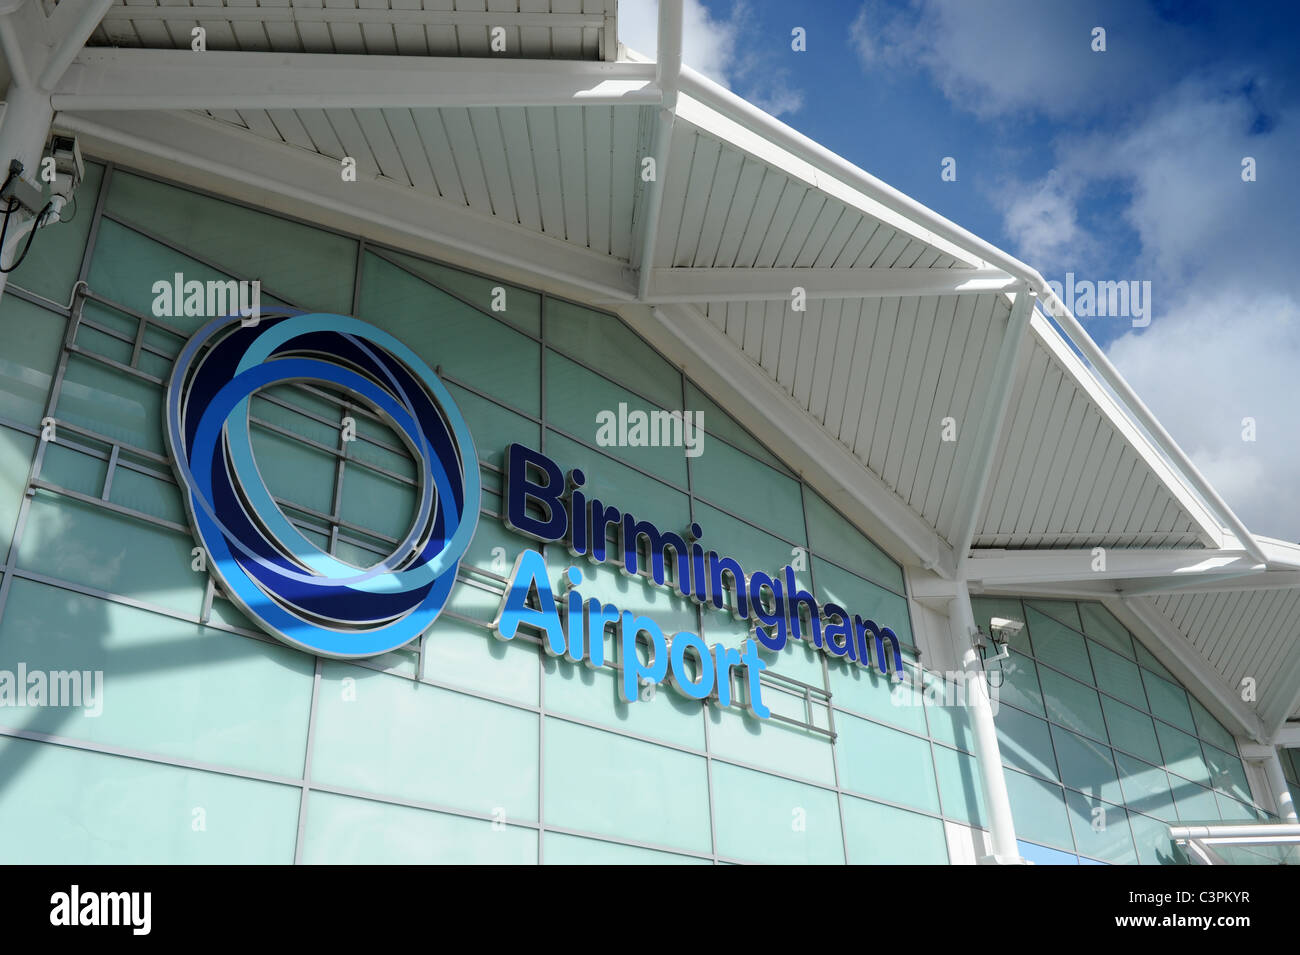 Birmingham Flughafen terminal neues Logo Zeichen England Uk Stockfoto